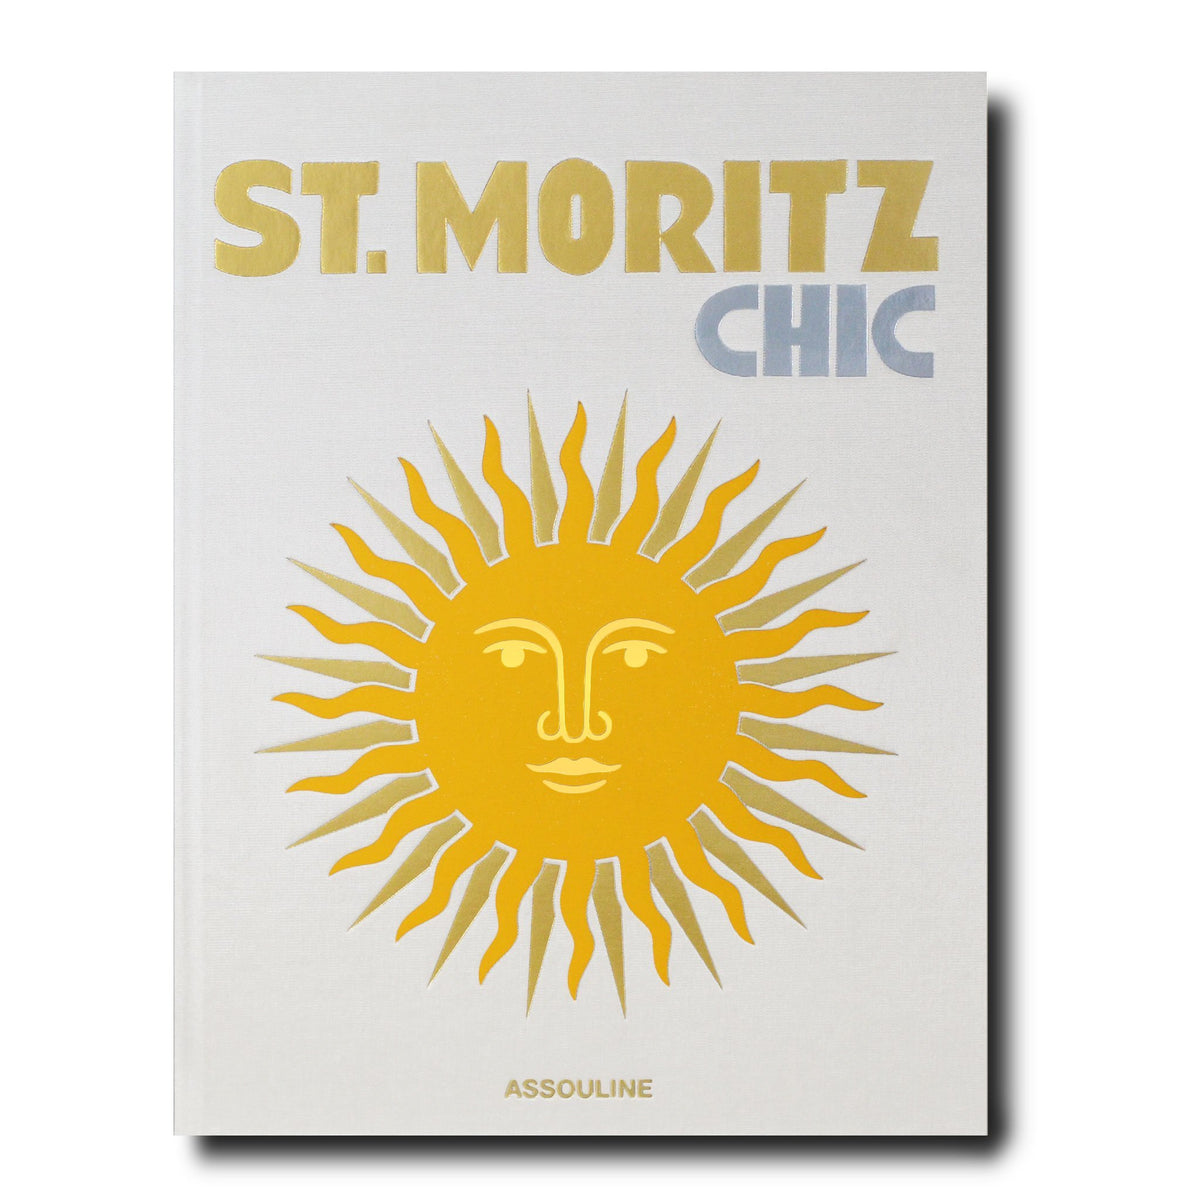 "St. Moritz Chic"